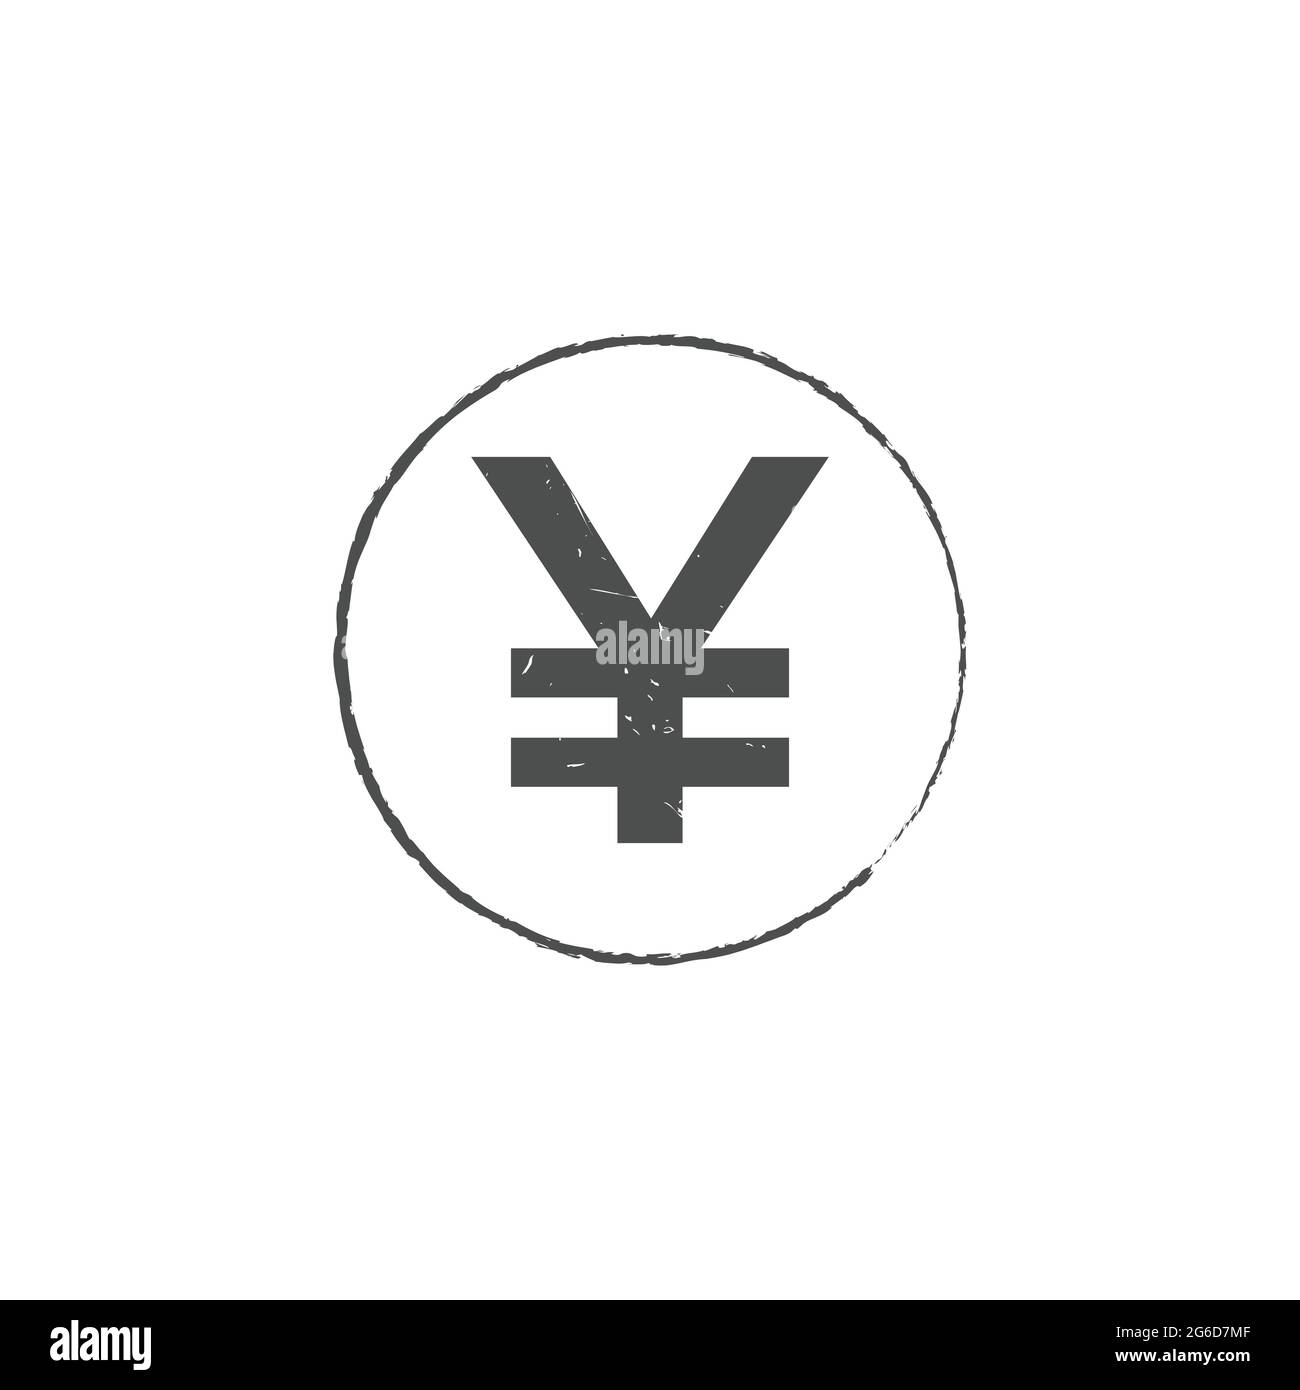 Japon yen JPY joint à motif vectoriel. Symbole de devise grand public avec motif de sceau de forme grunge Illustration de Vecteur